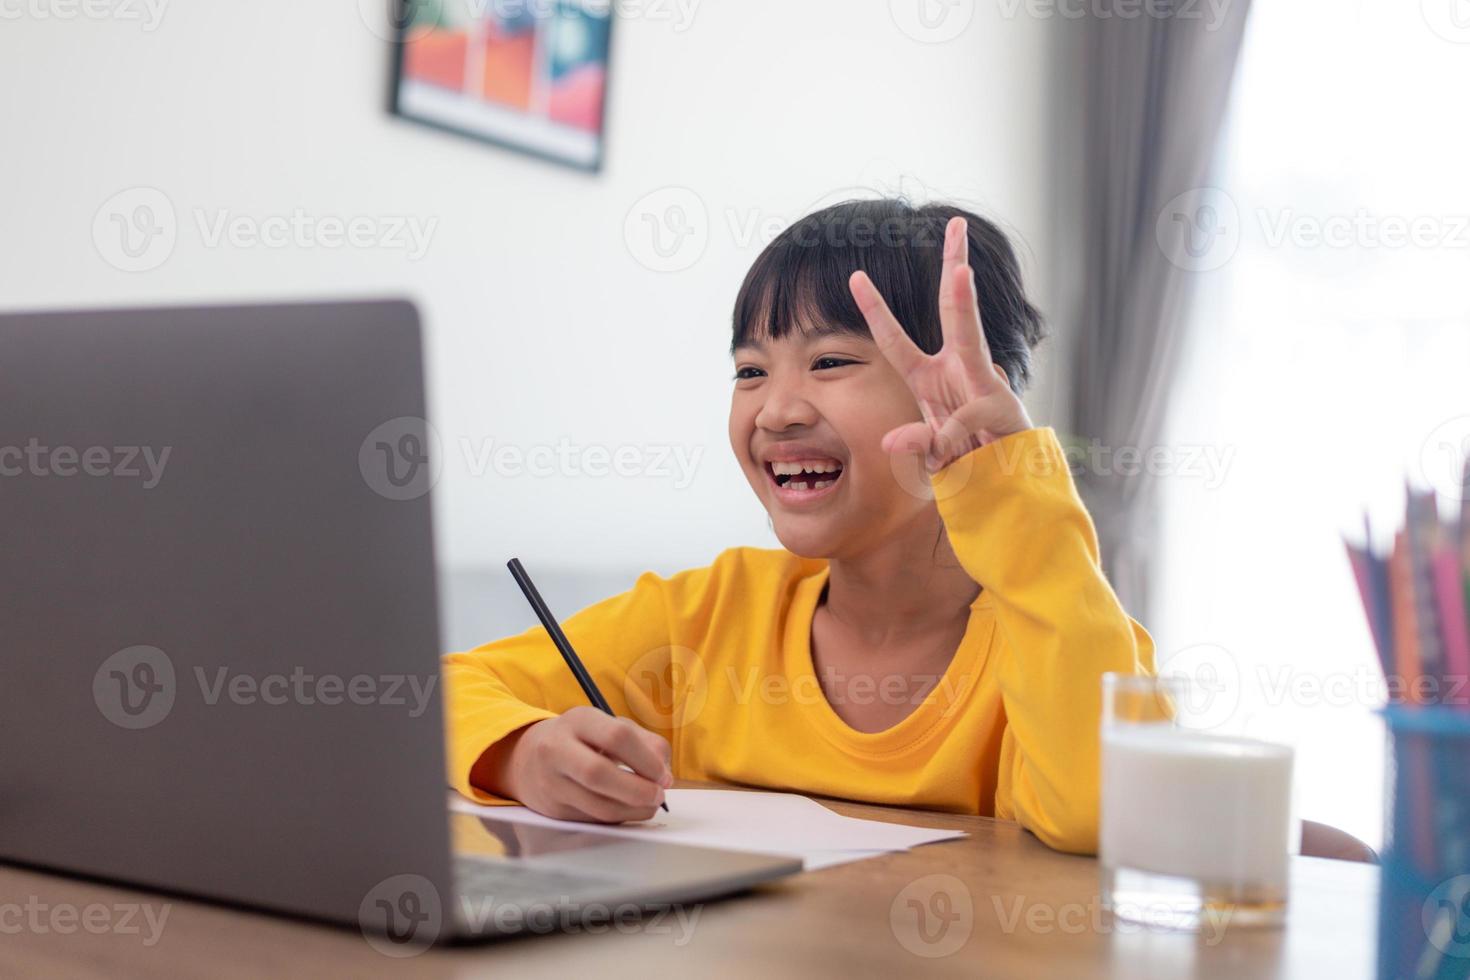 étudiant fille asiatique classe d'apprentissage en ligne étude appel vidéo en ligne zoom enseignant, fille heureuse apprendre la langue anglaise en ligne avec un ordinateur portable à la maison.nouveau normal.covid-19 coronavirus.distanciation sociale.rester à la maison photo